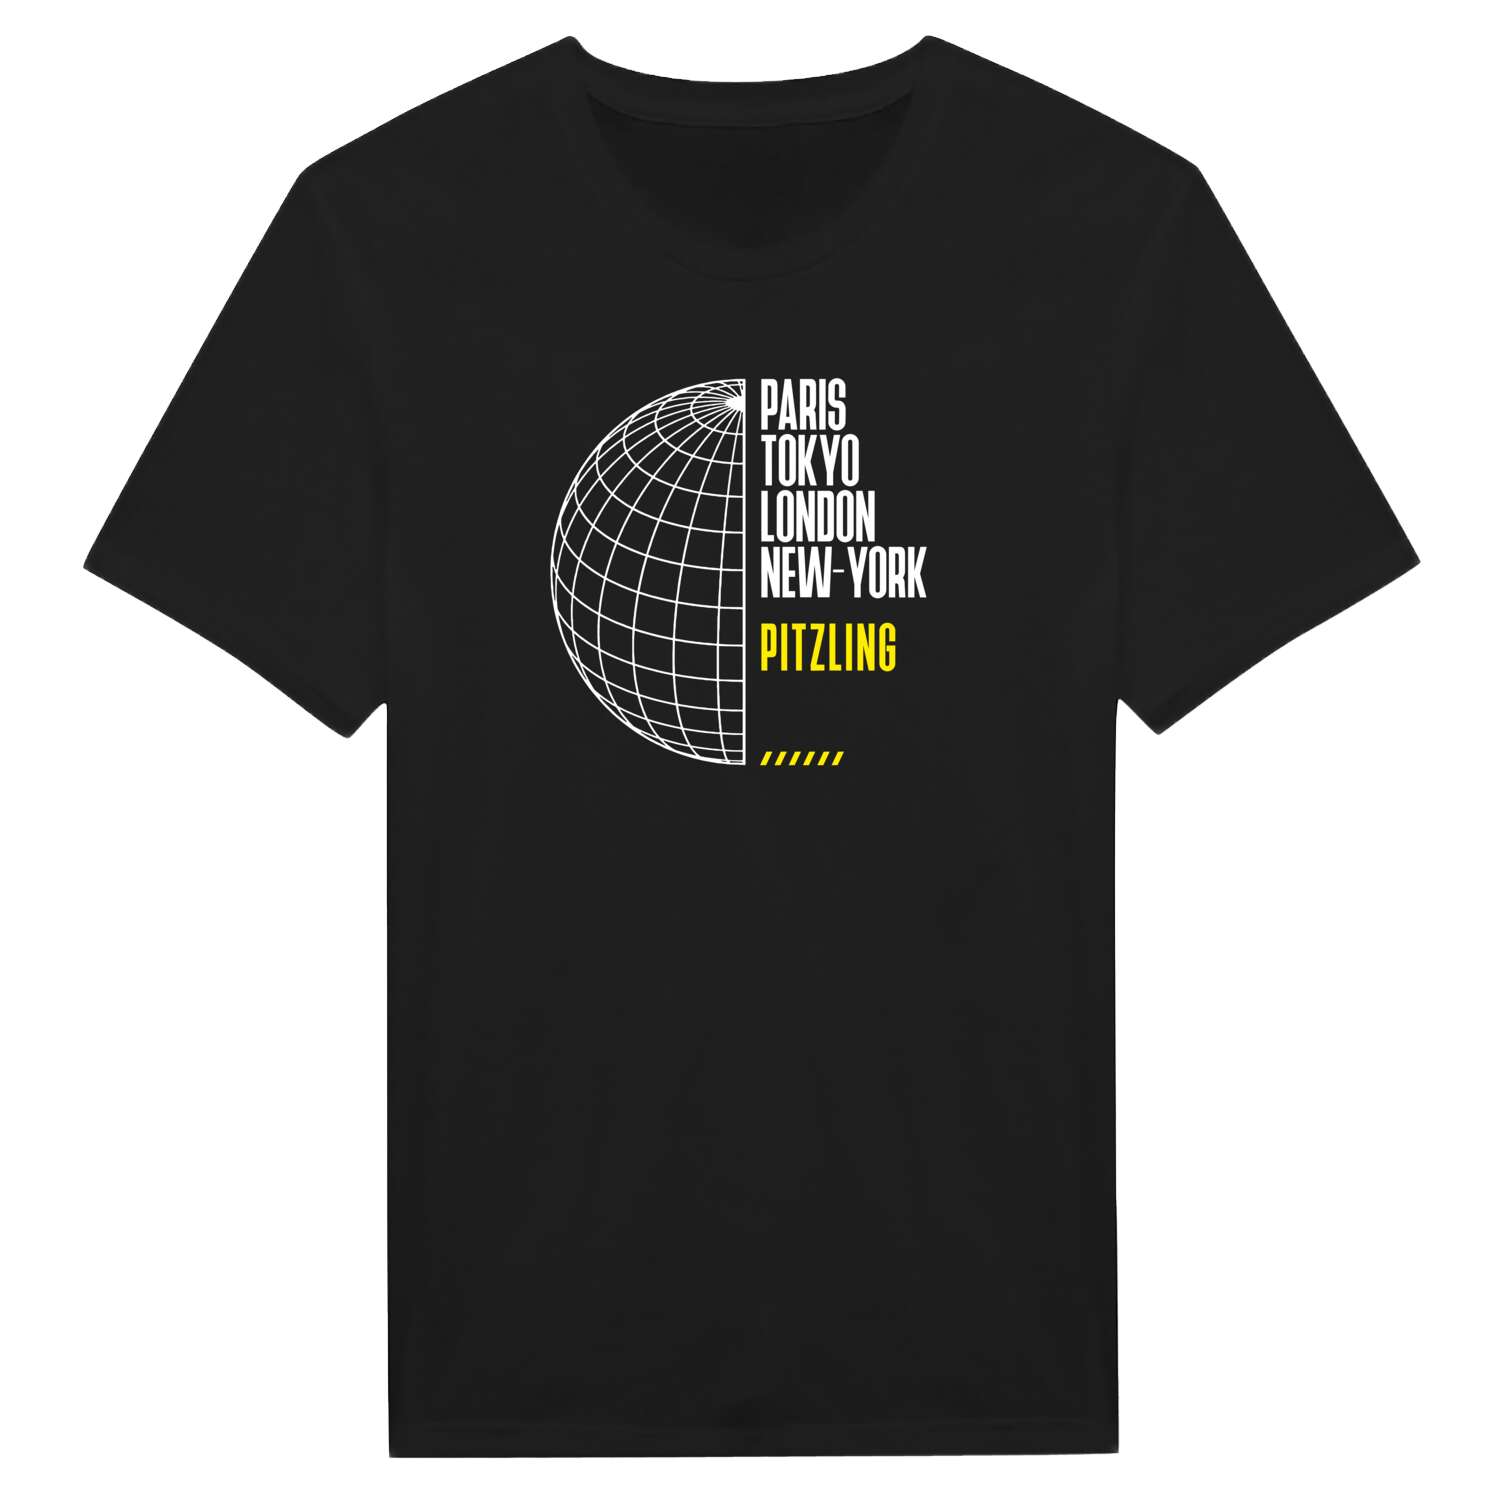 Pitzling T-Shirt »Paris Tokyo London«